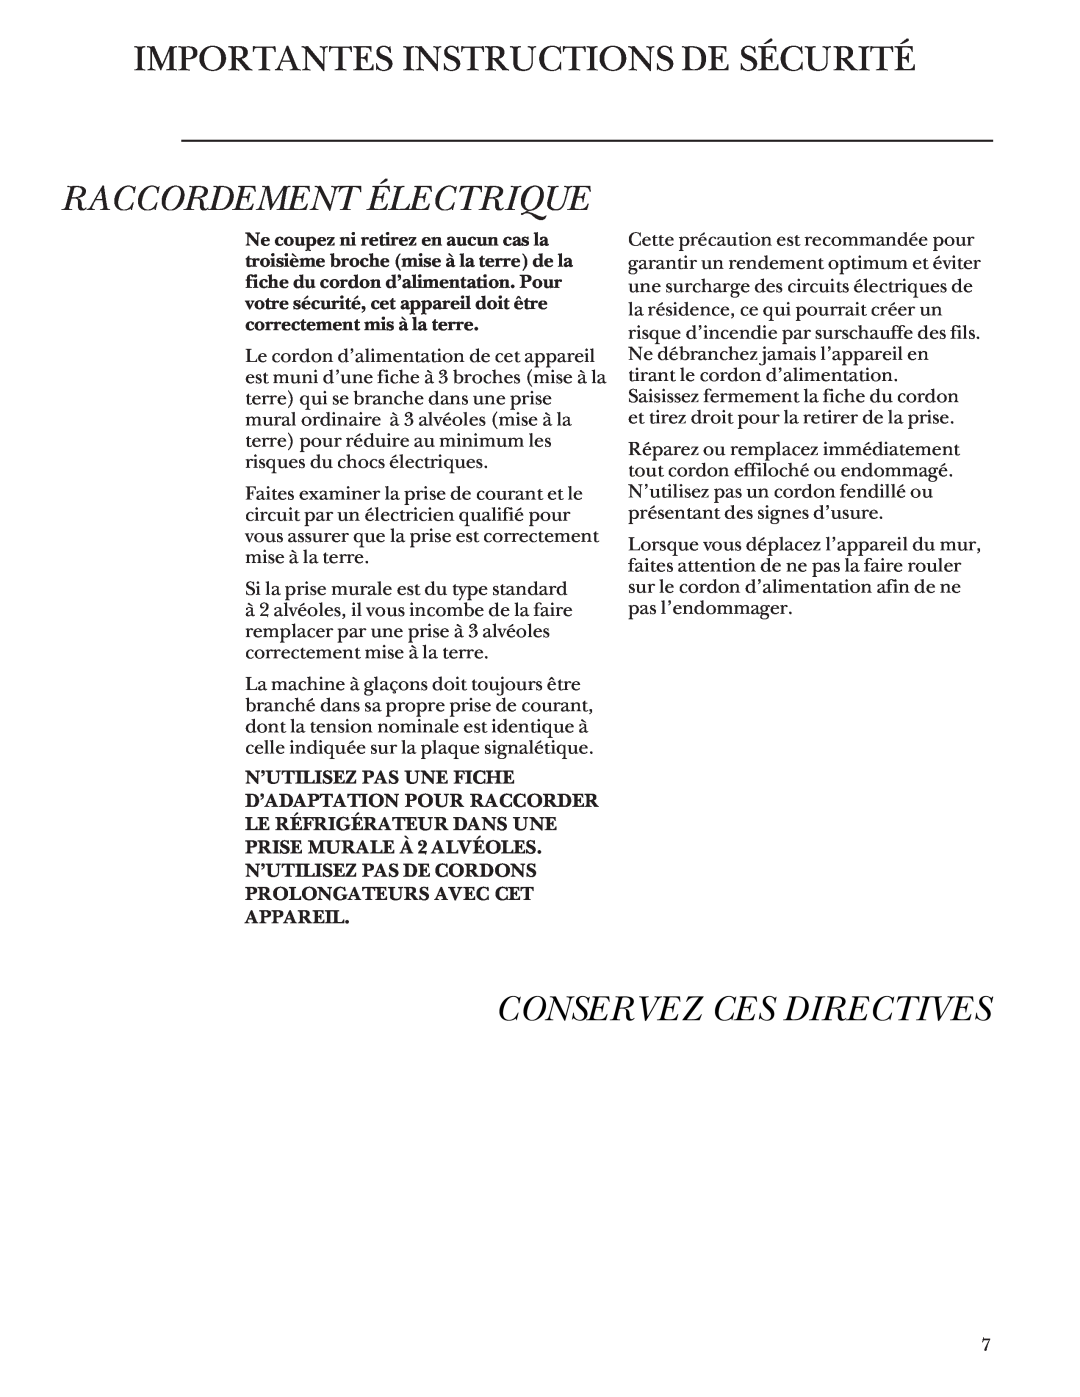 GE Monogram 48 Built-In Refrigerators manual Importantes Instructions De Sécurité, Raccordement Électrique 